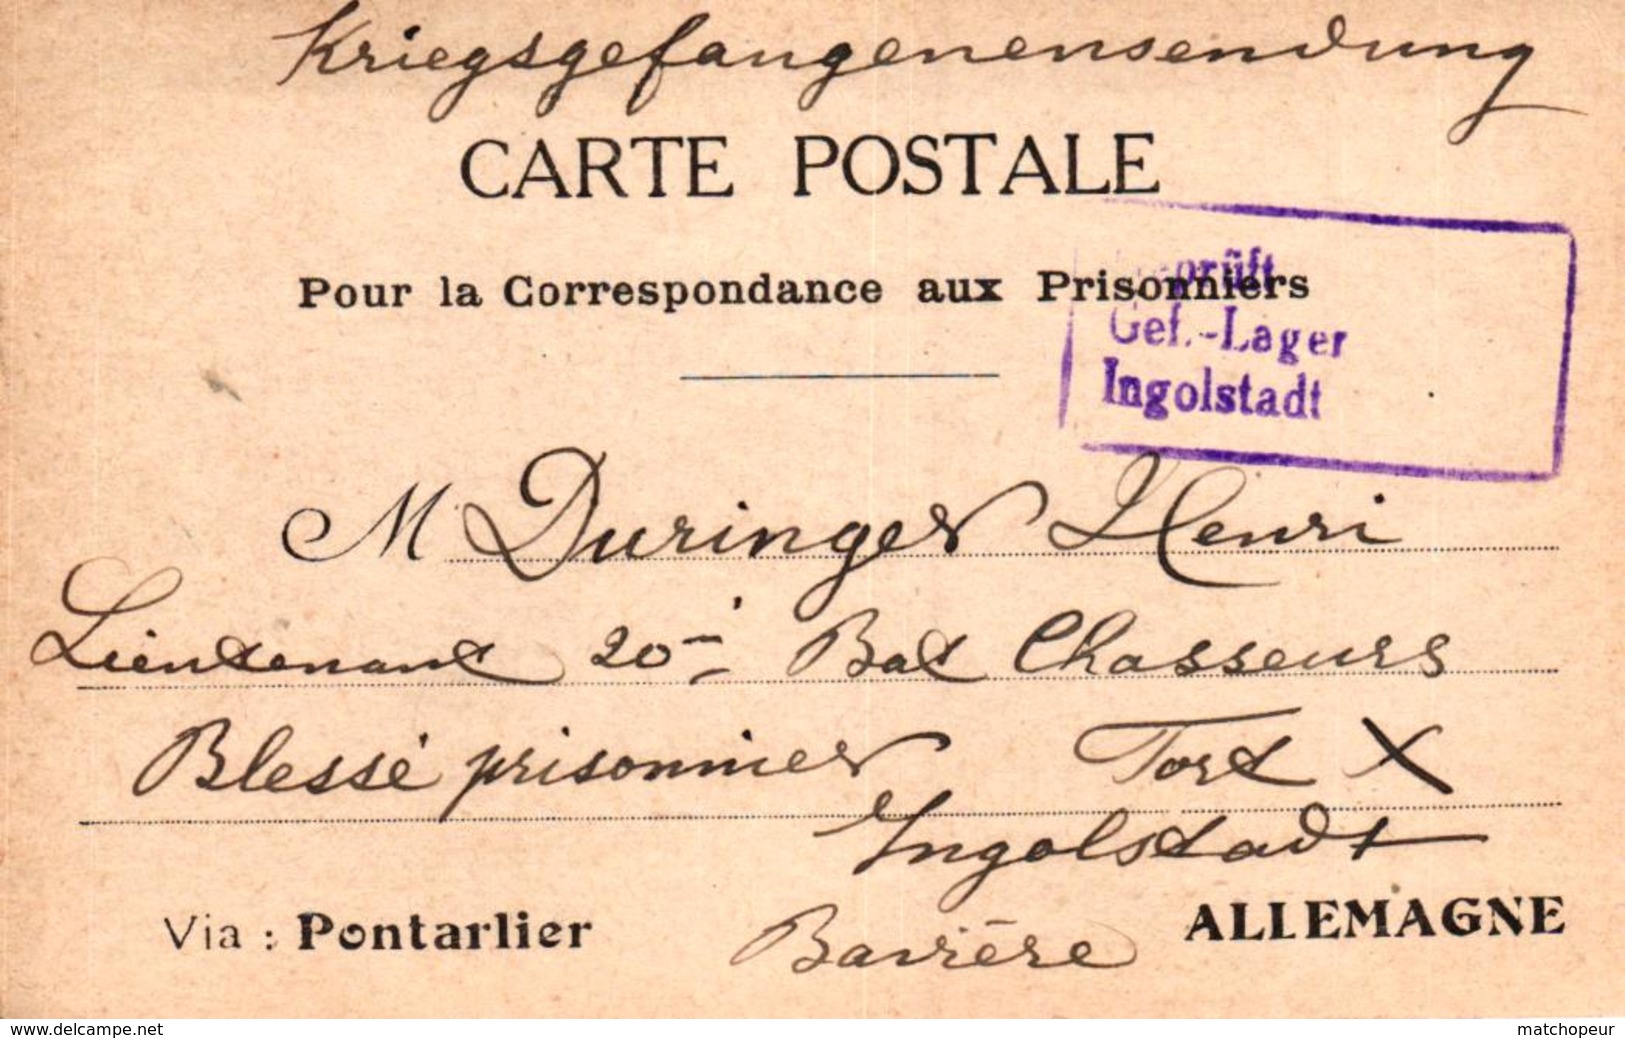 CARTE POSTALE EN FRANCHISE POUR PRISONNIER DE GUERRE VIA PONTARLIER - Guerre 1914-18